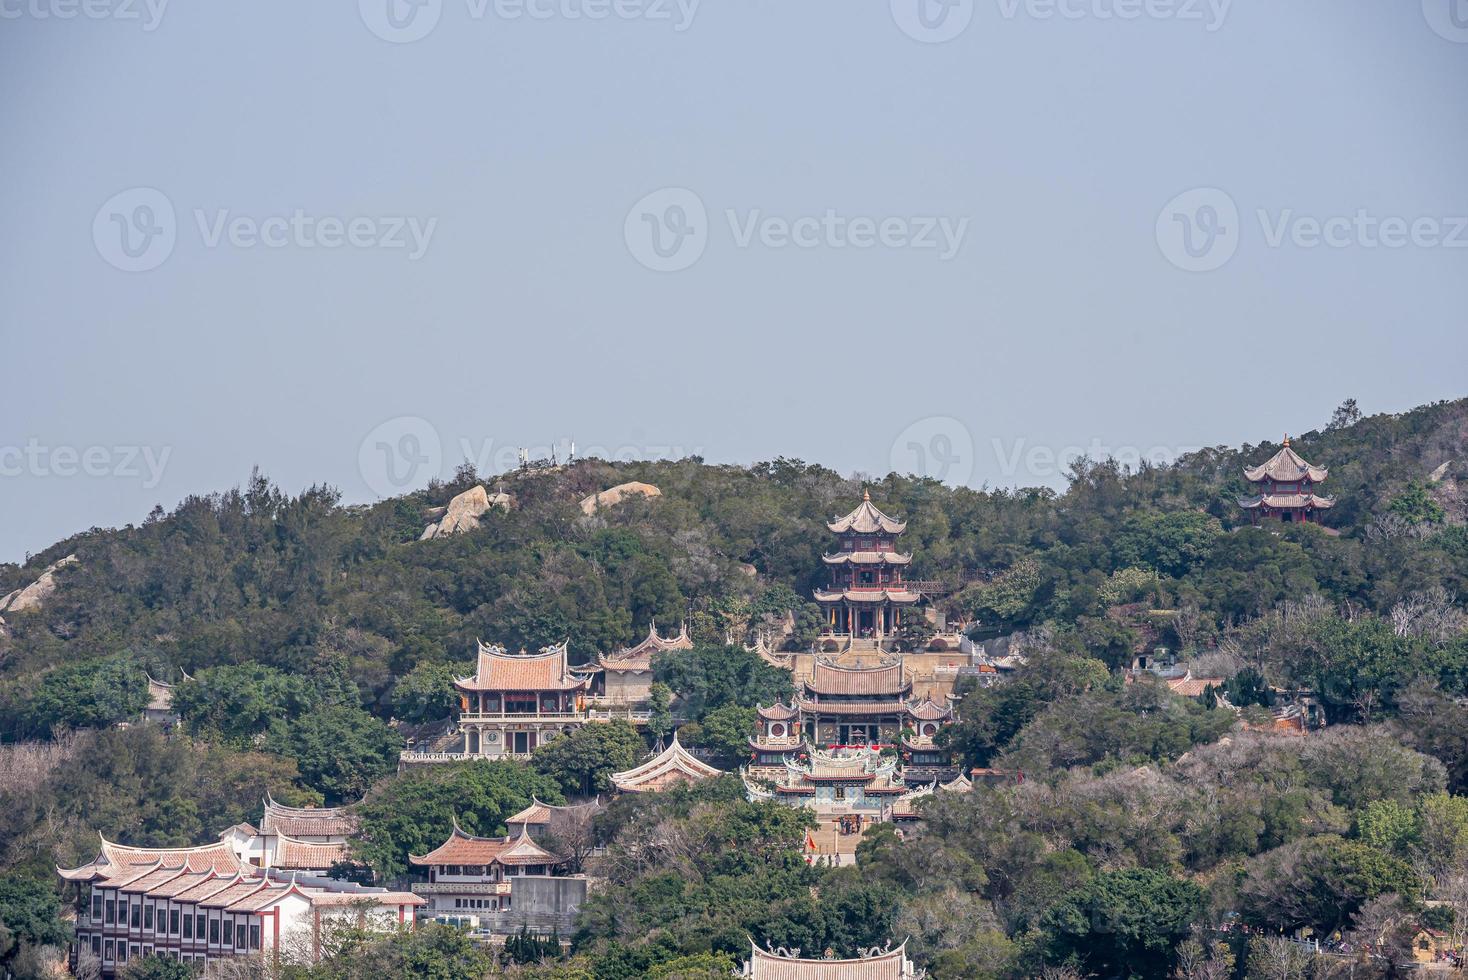 complexo arquitetônico do templo de mazu na ilha de meizhou, china foto